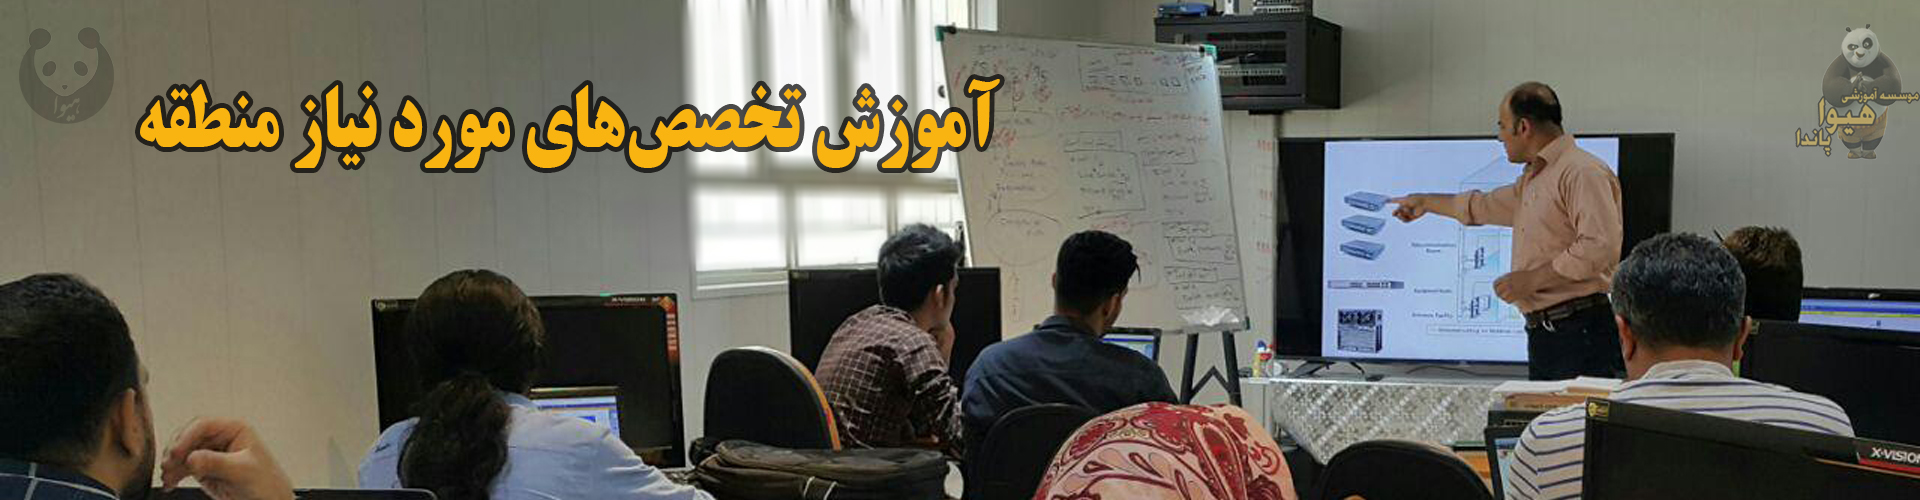 آموزش های مجازی ماهشهر و خوزستان دوره های کاربردی شبکه و برنامه نویسی و گرافیک و سخت افزار